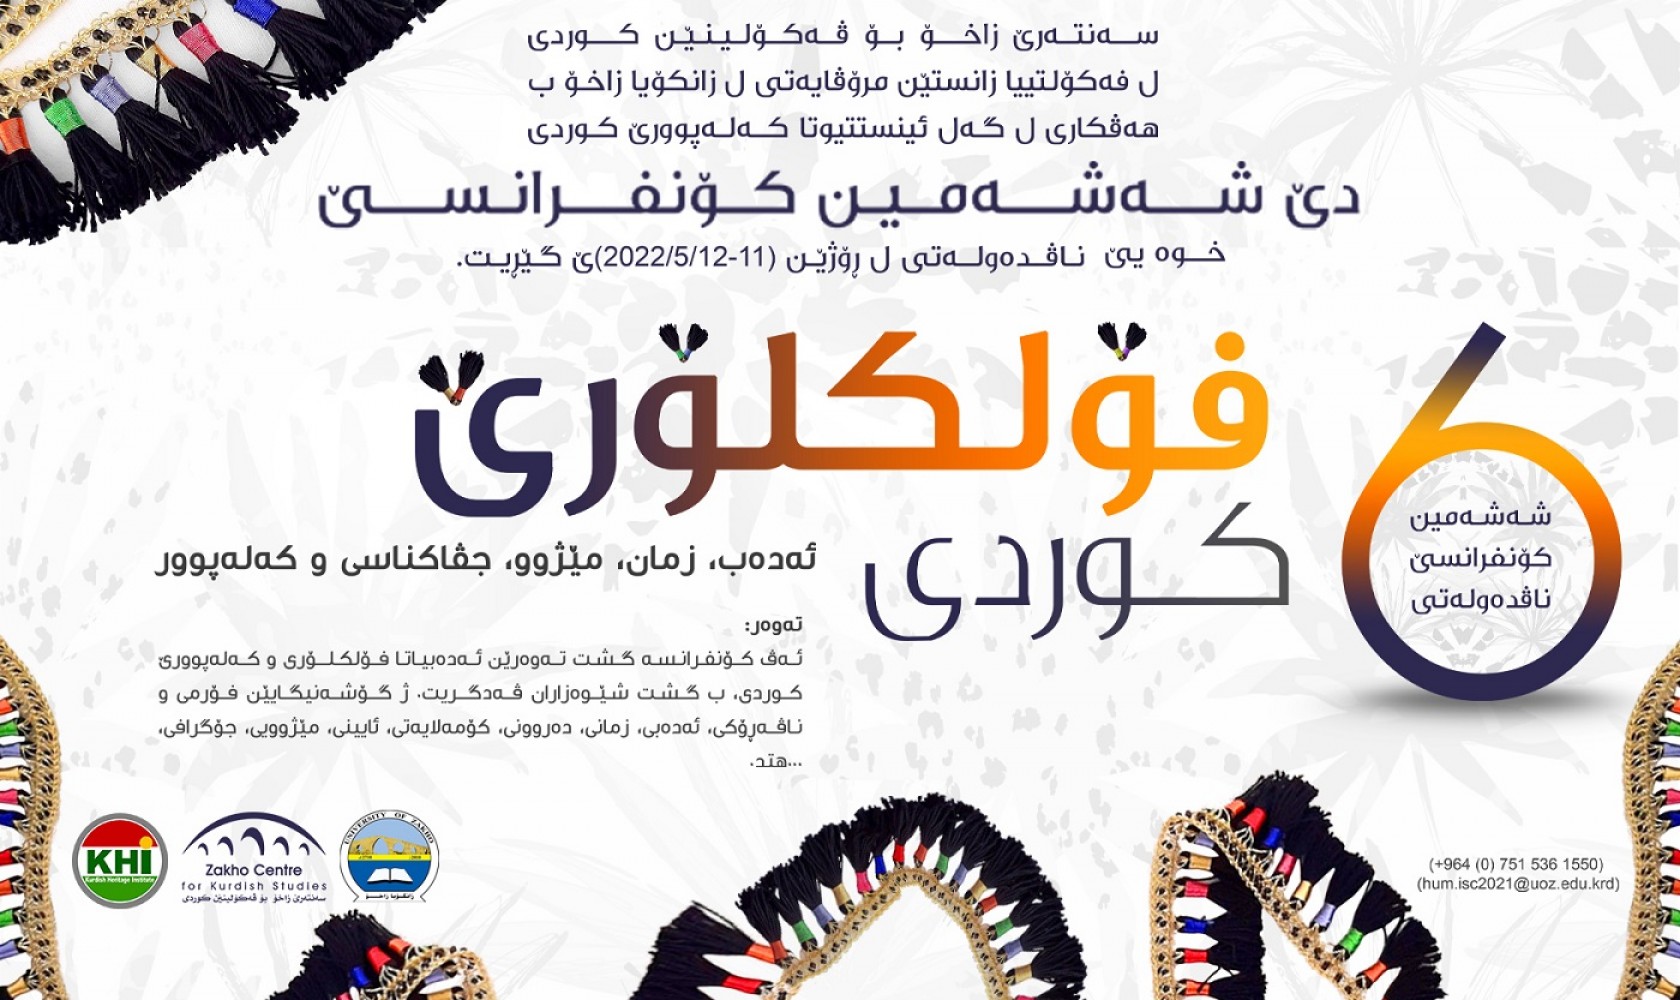 7th International Conference - Zakho Center For Kurdish Studies, 05-11-2022